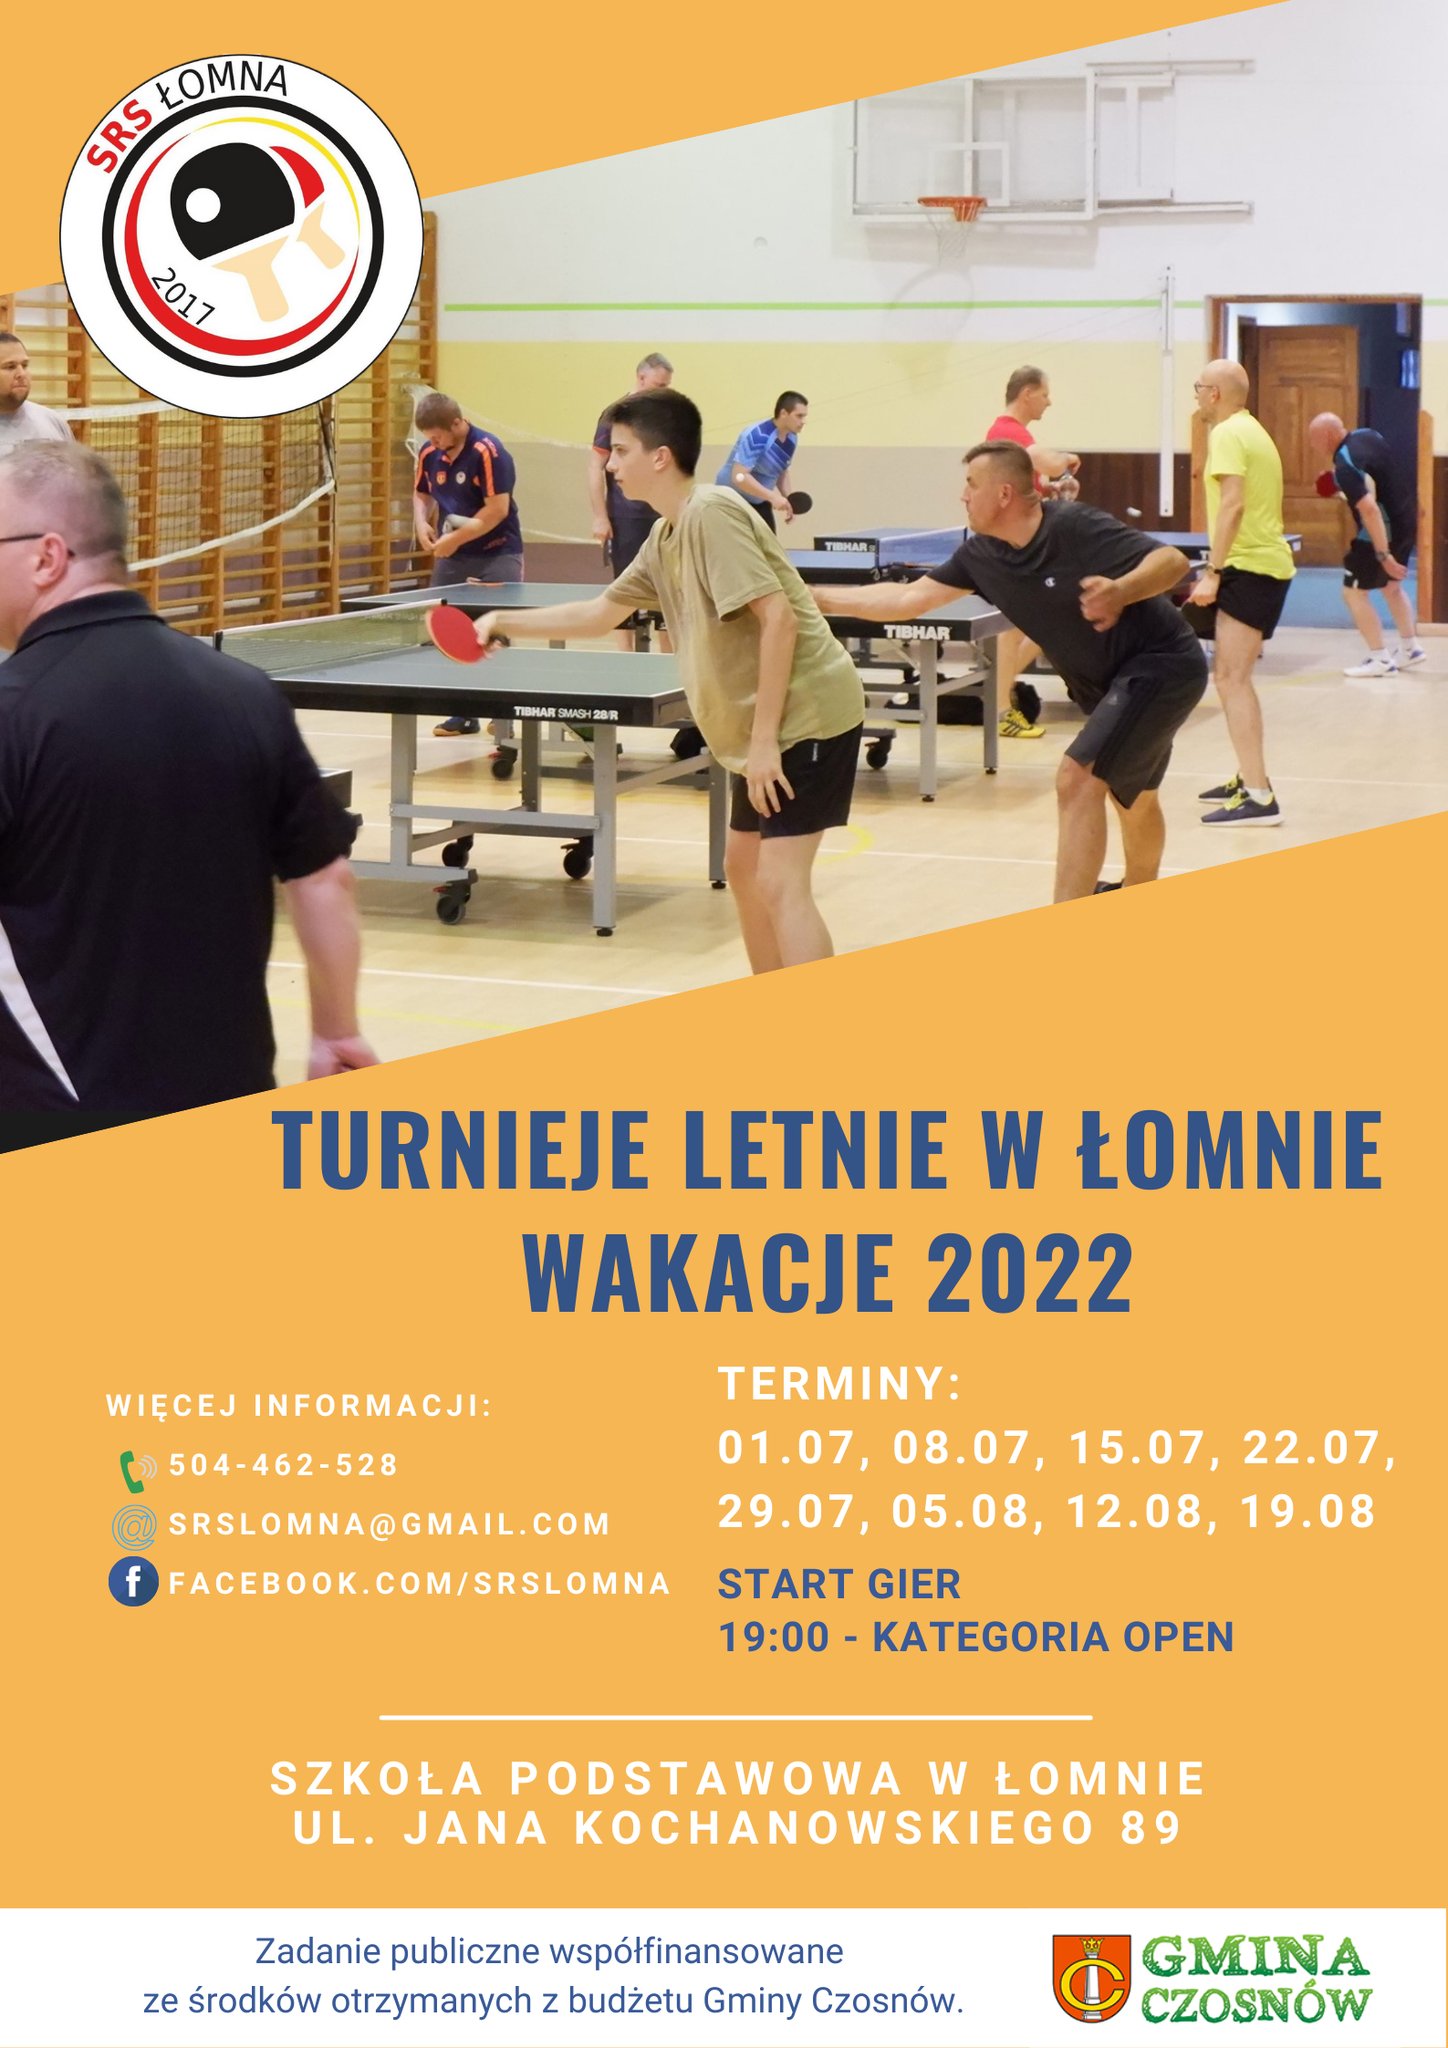 Plakat turnieju Turnieje letnie w Łomnie wakacje 2022 - termin 1